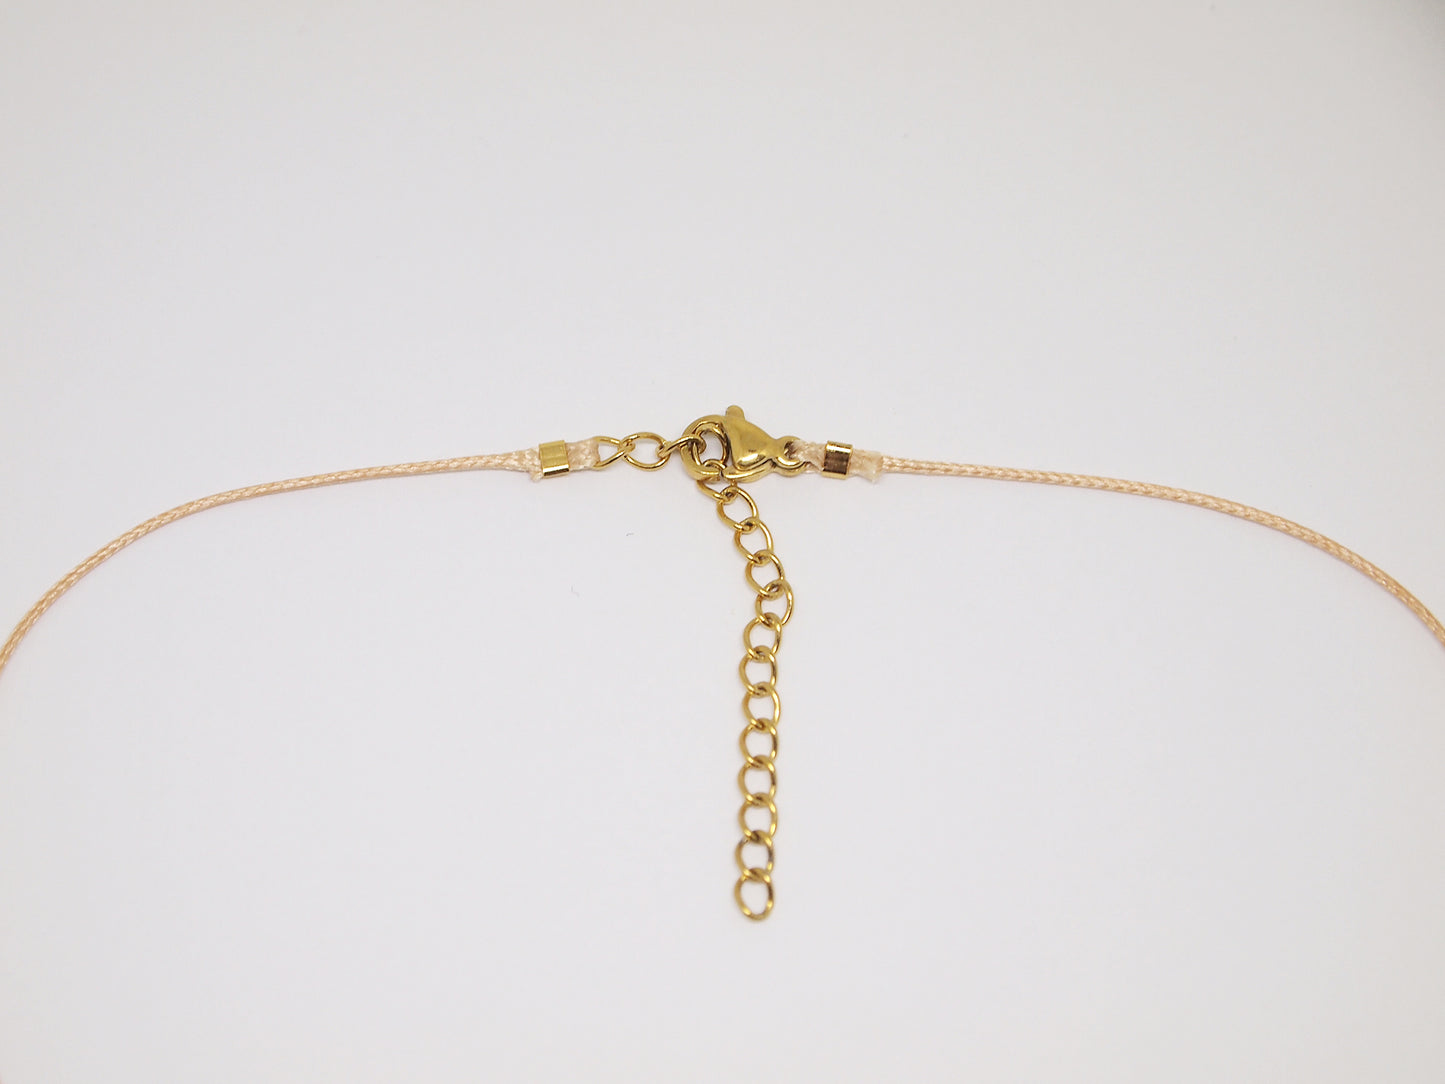 Selenite cord necklace